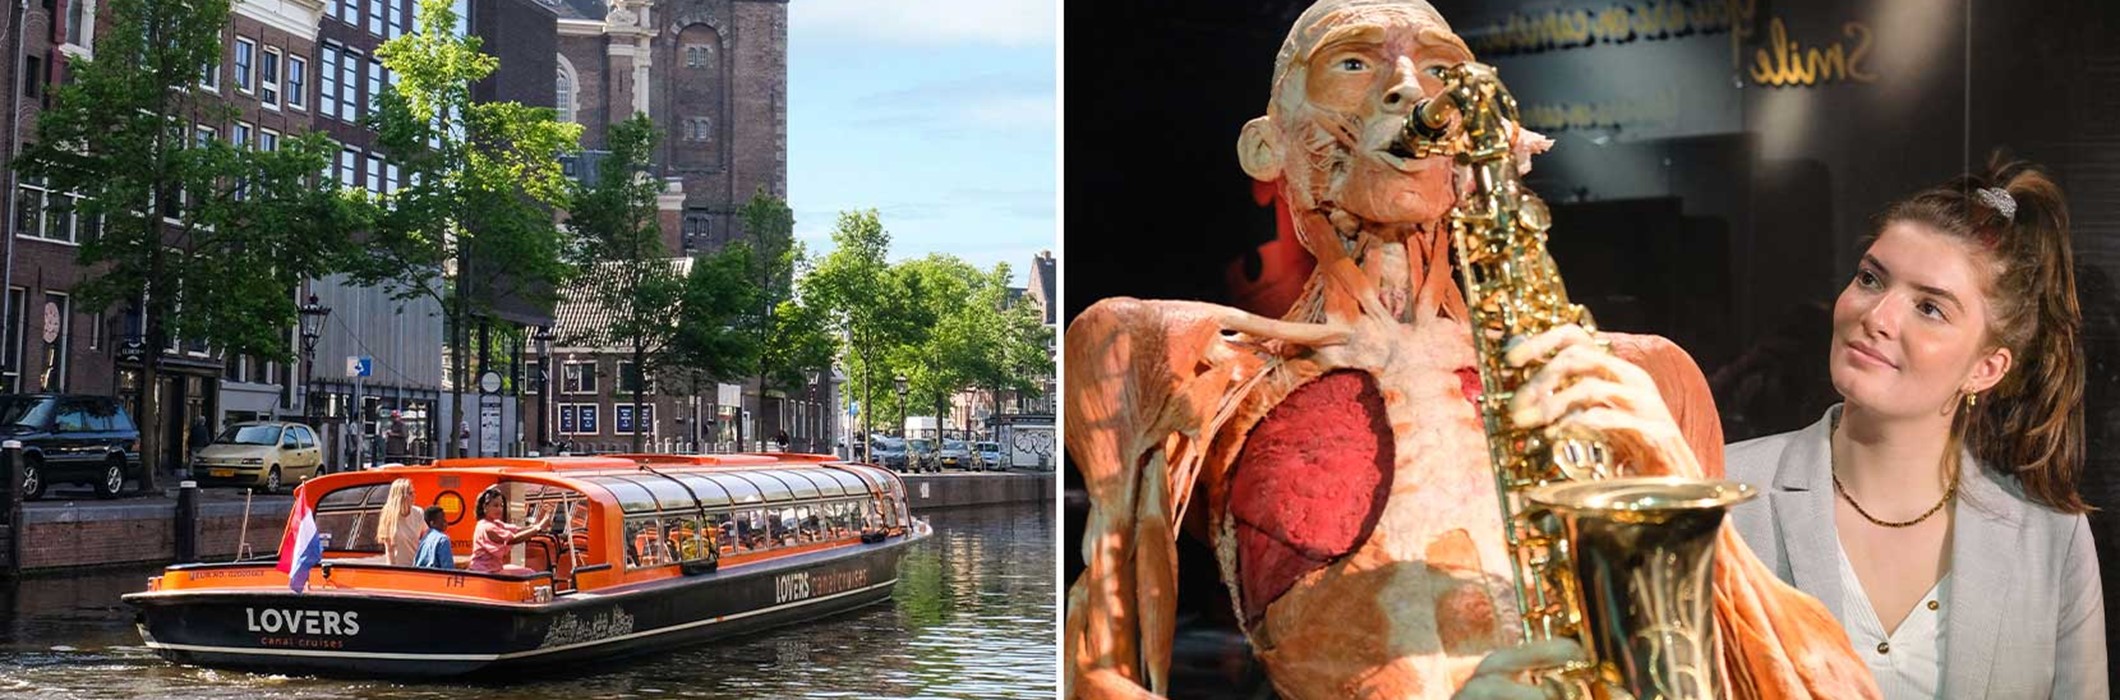 BODY WORLDS +  Croisière sur les canaux d'Amsterdam